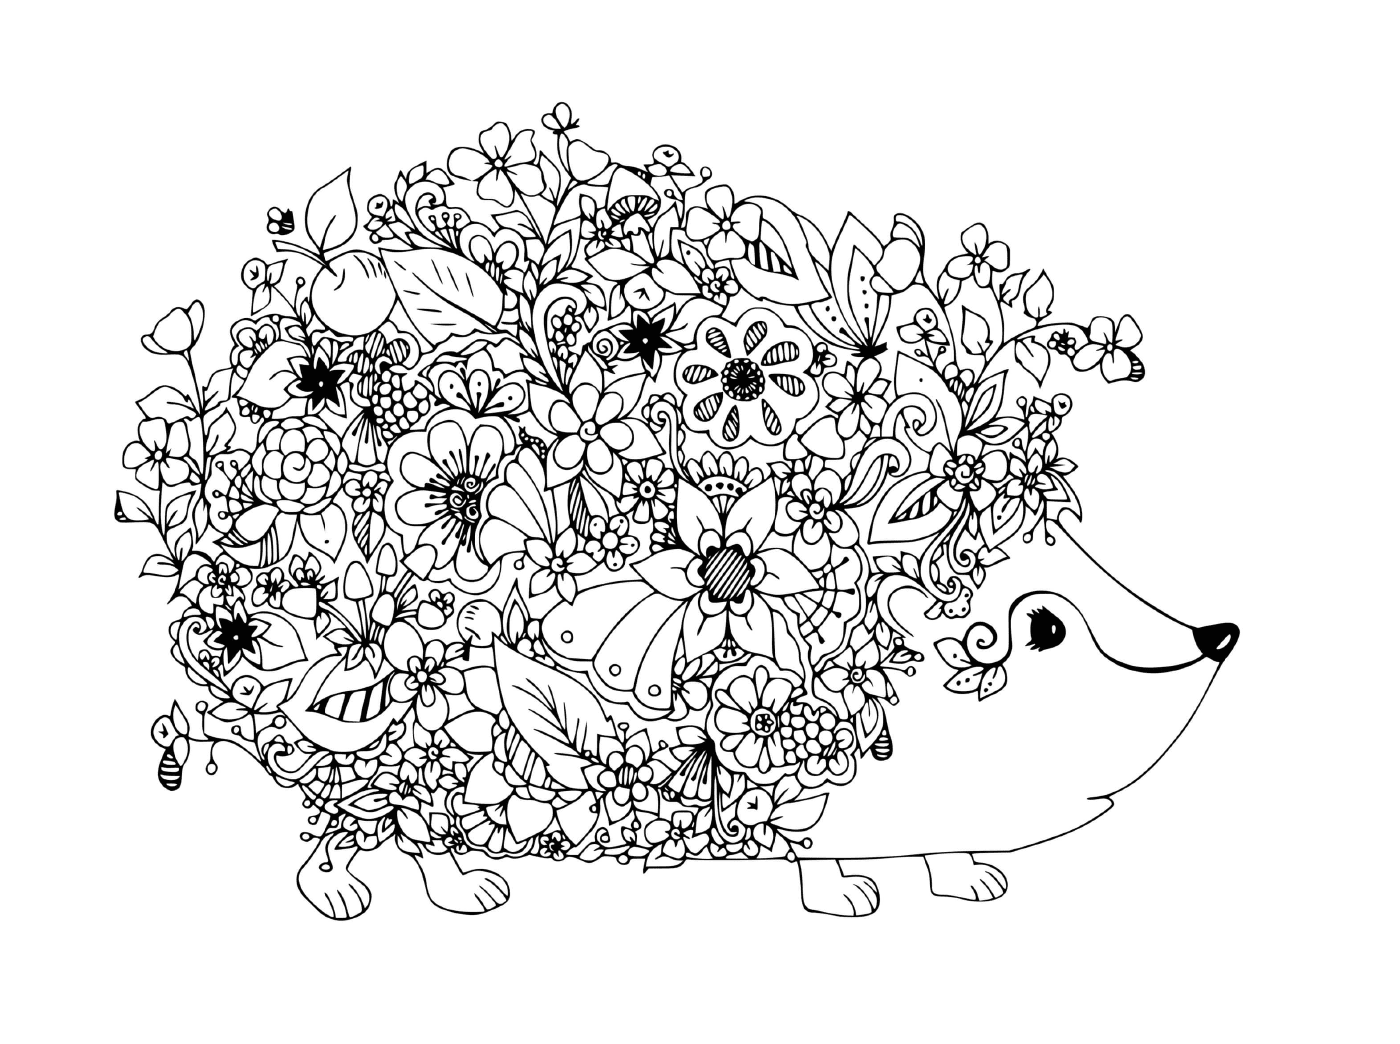  Flowery and cute hedgehog 